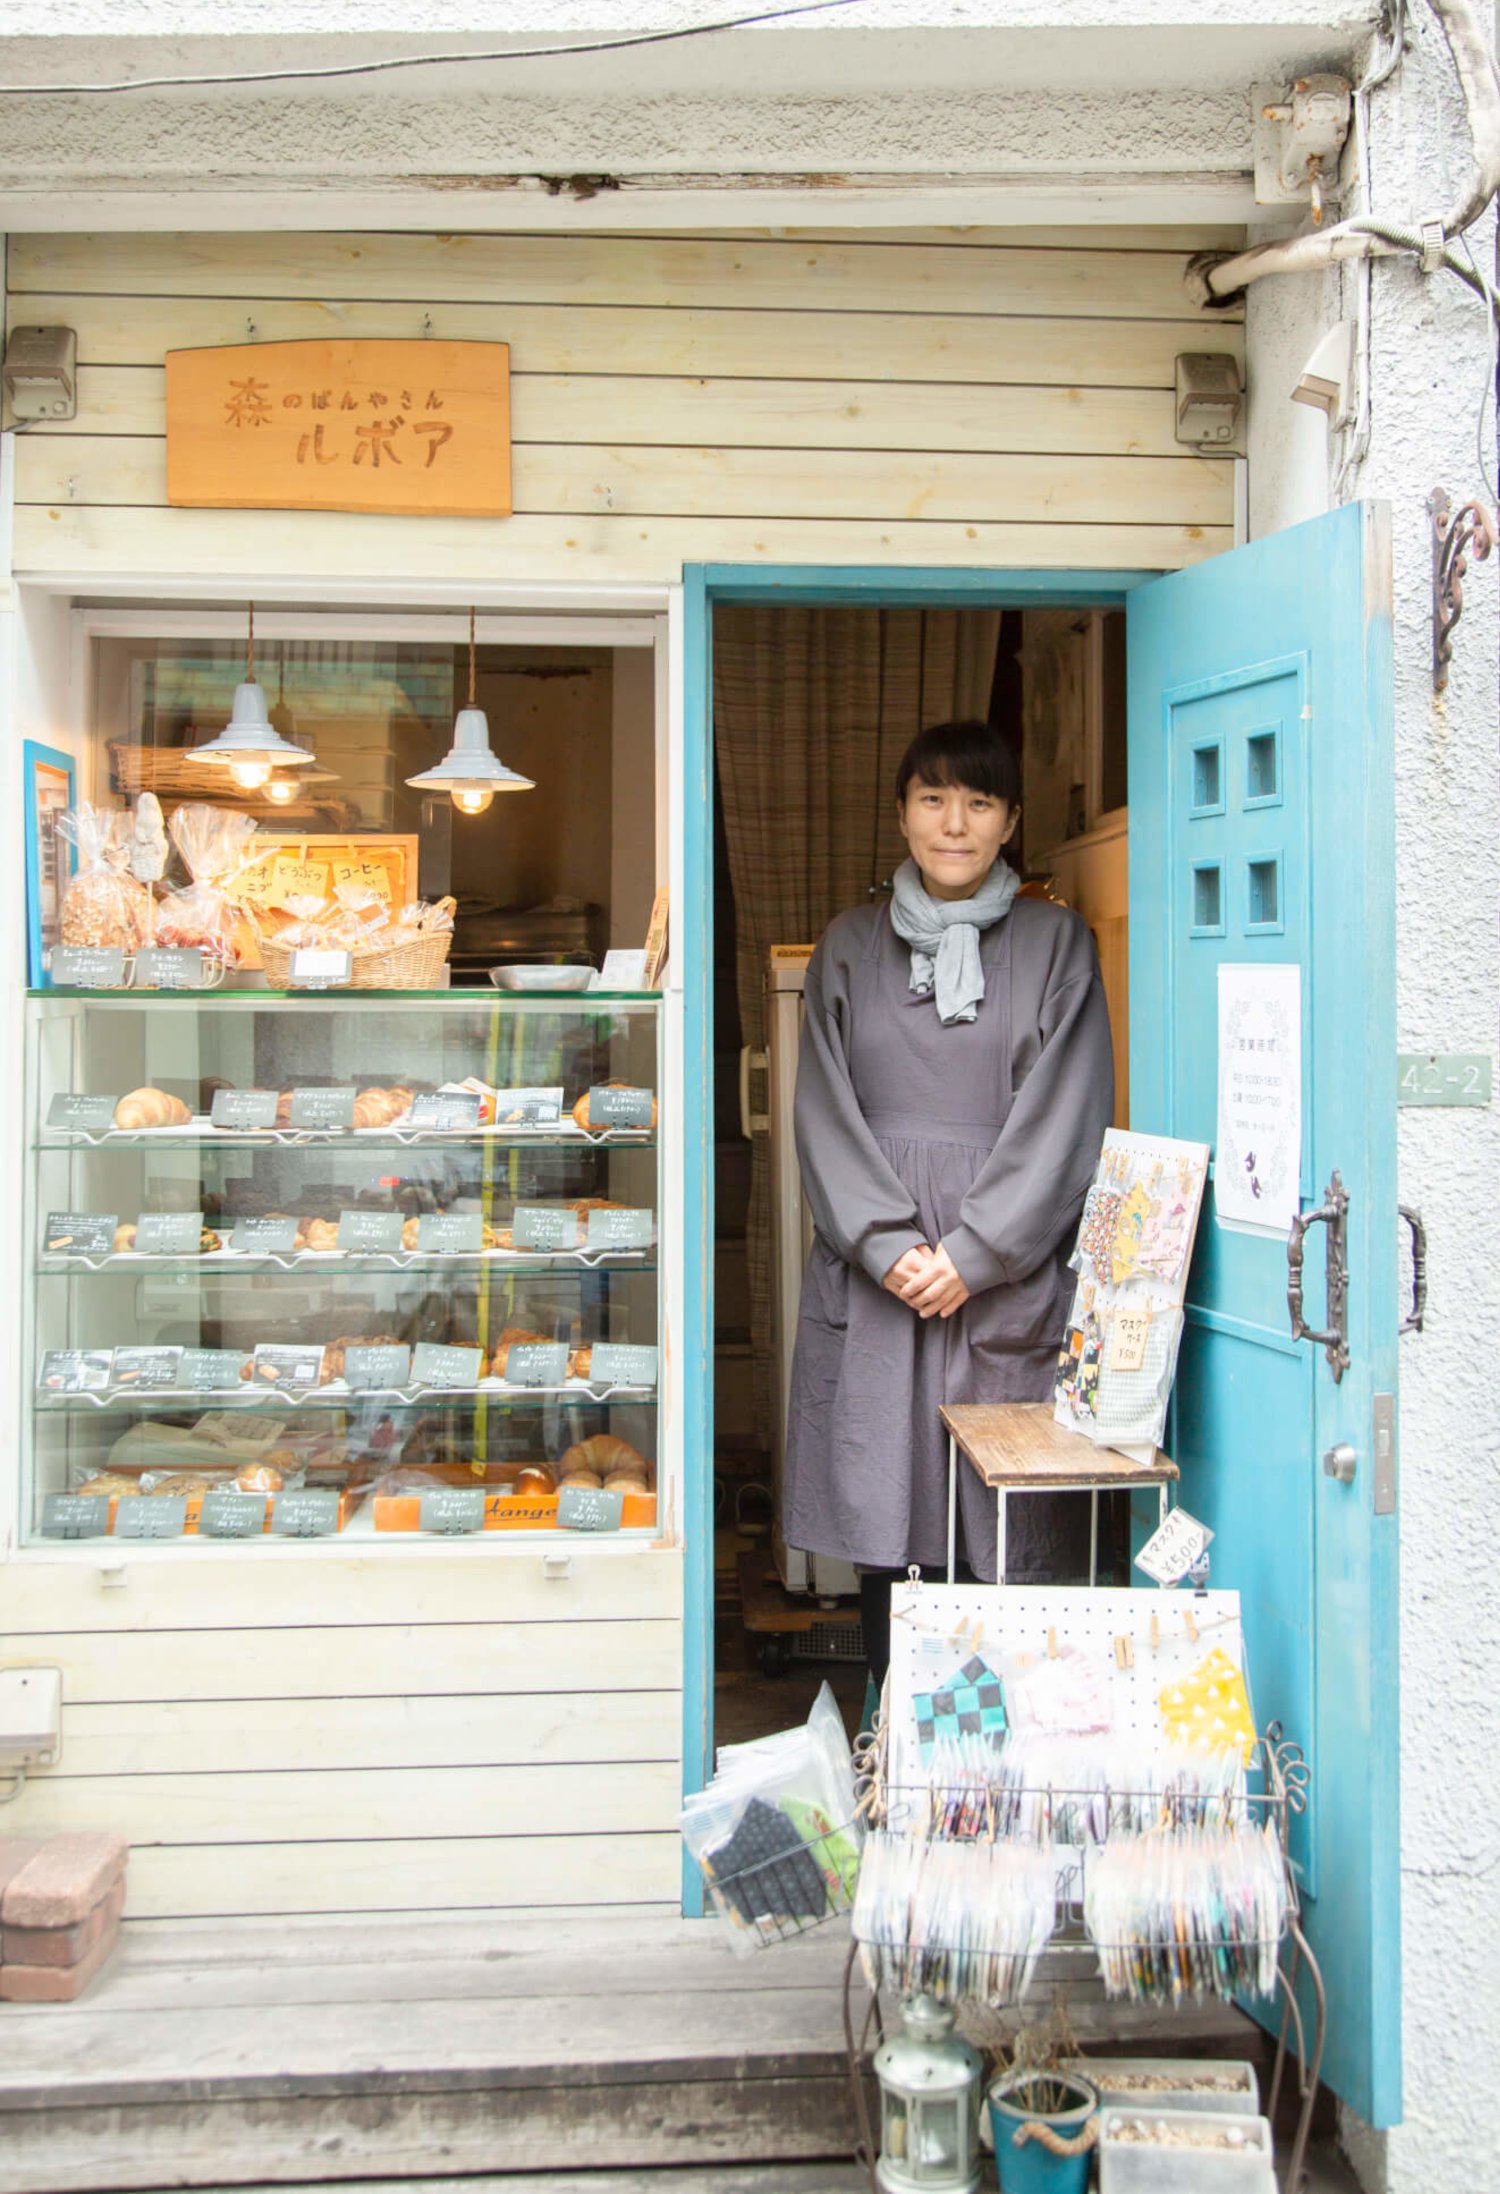 店主の森裕子さん。友人が作る焼き菓子やマスクも販売。